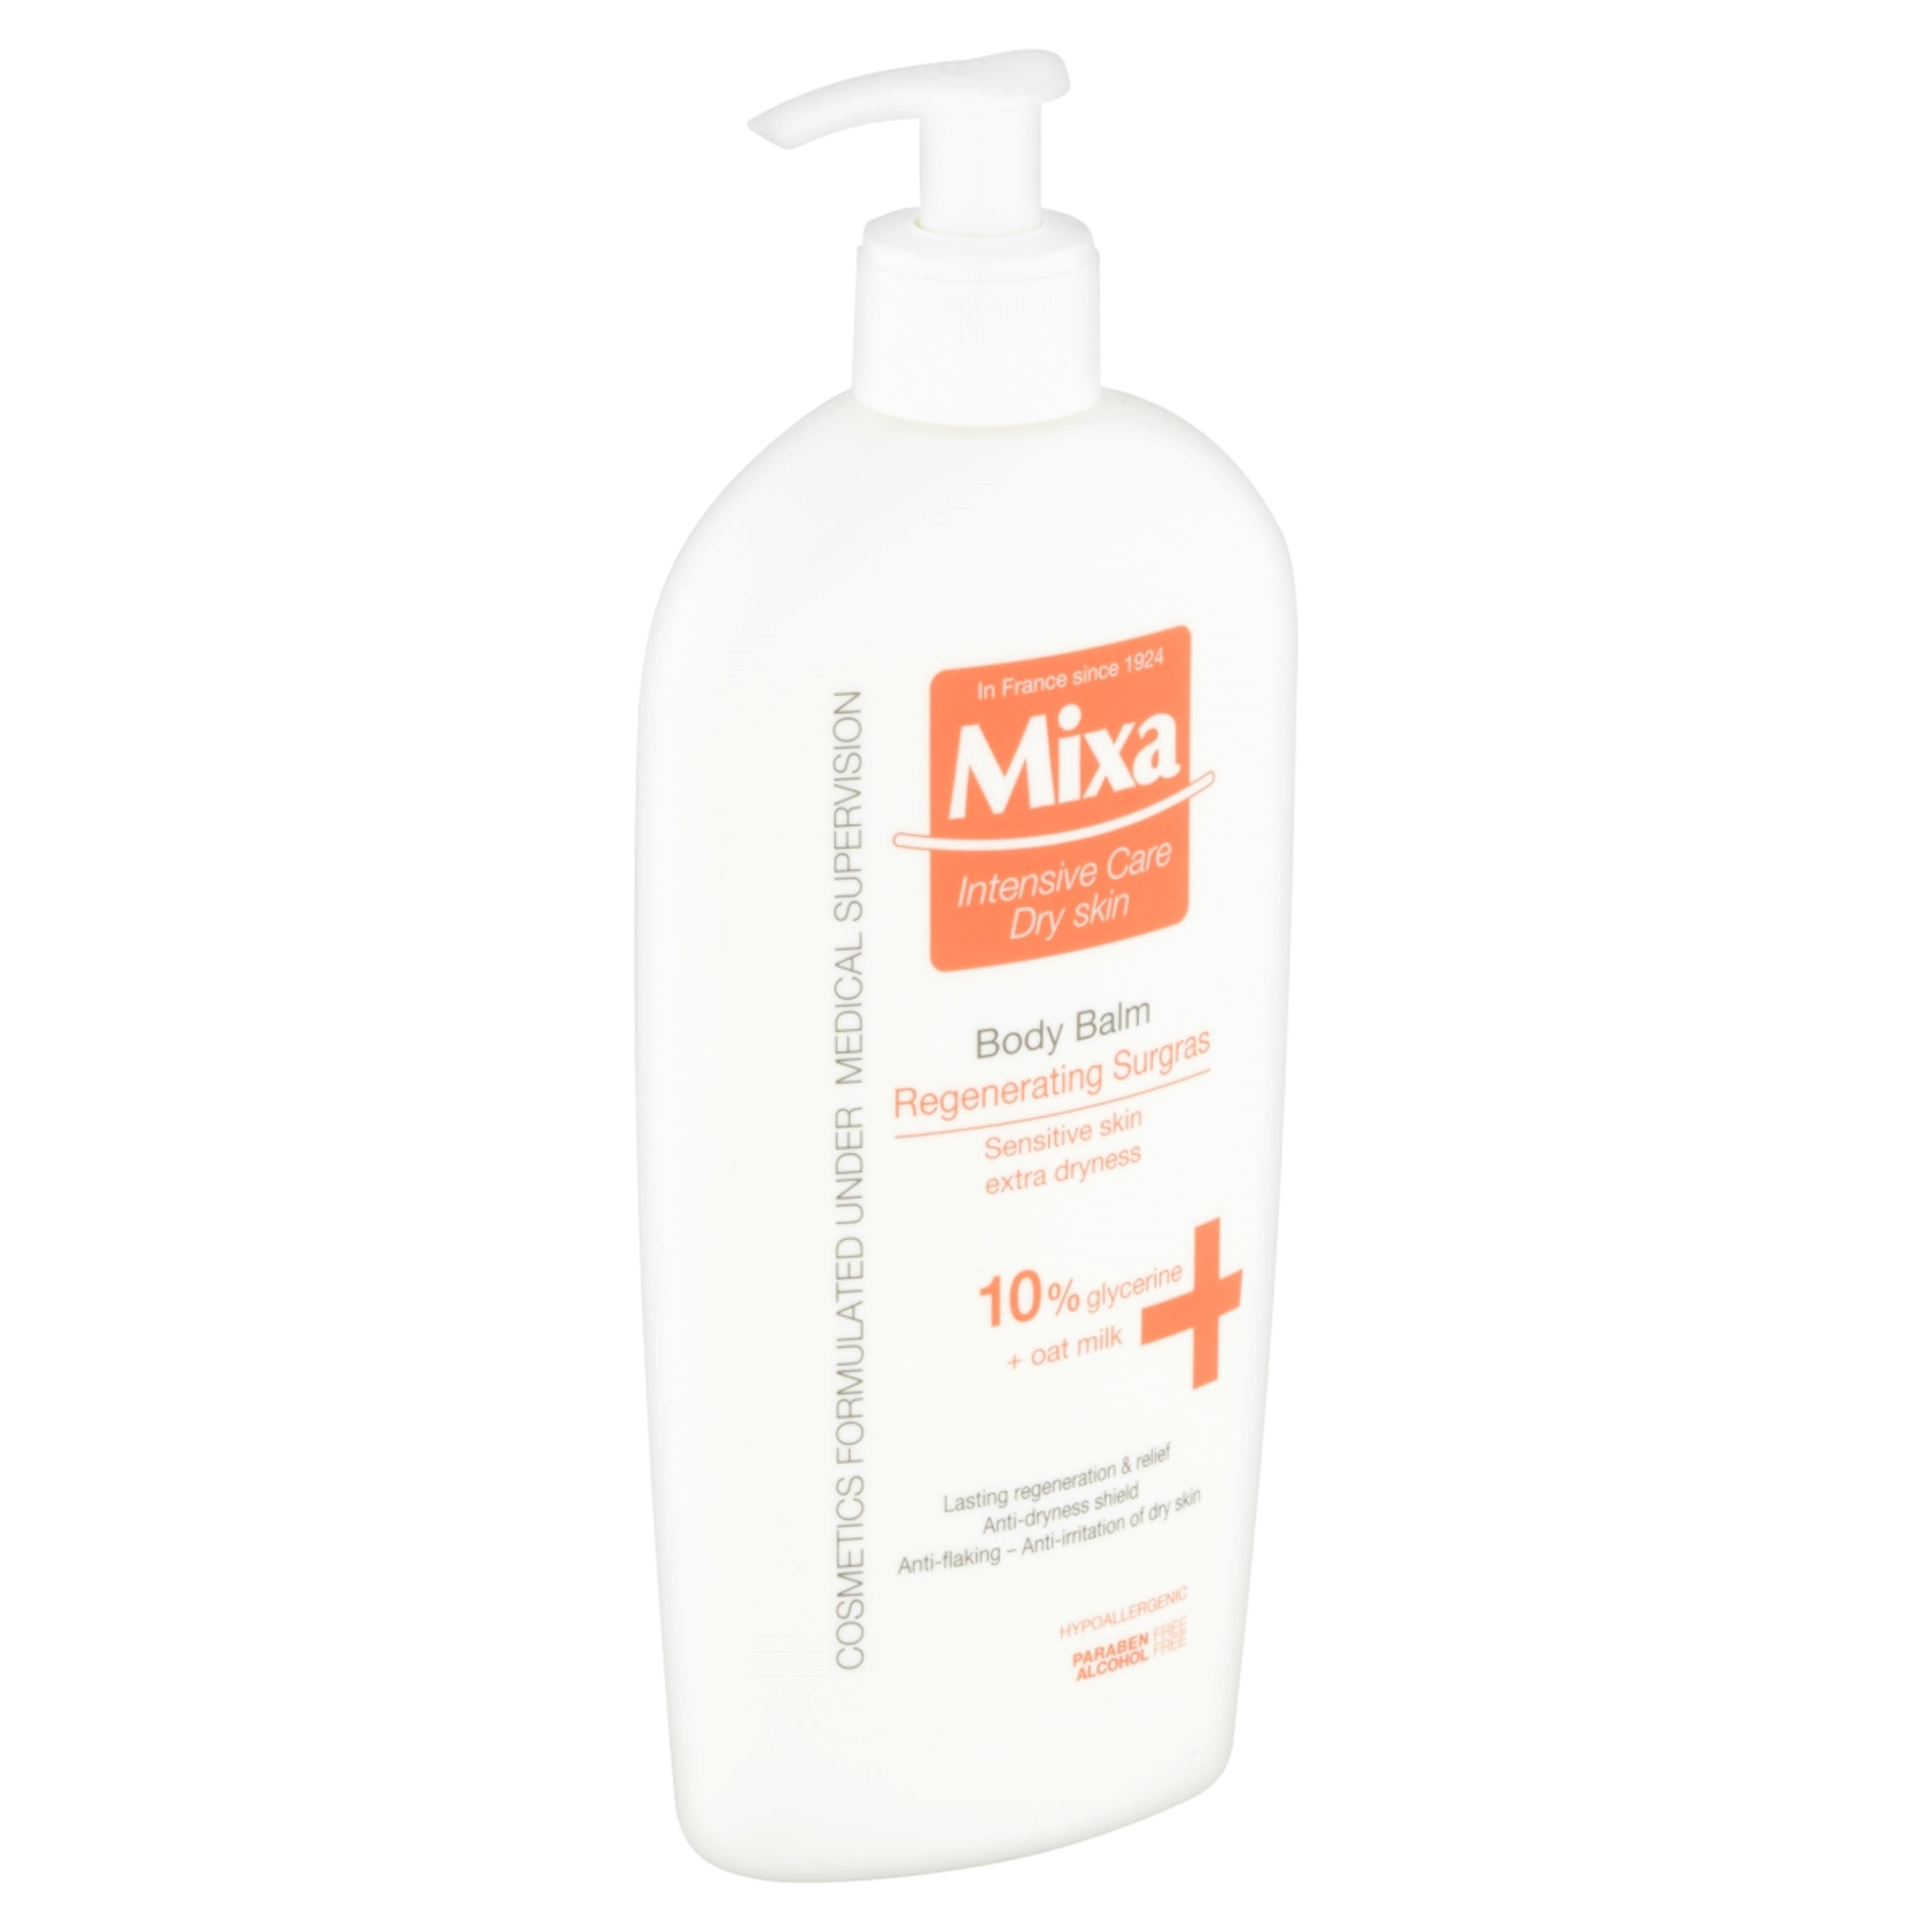 Mixa Regenerating Surgras testápoló tej - 400 ml-2